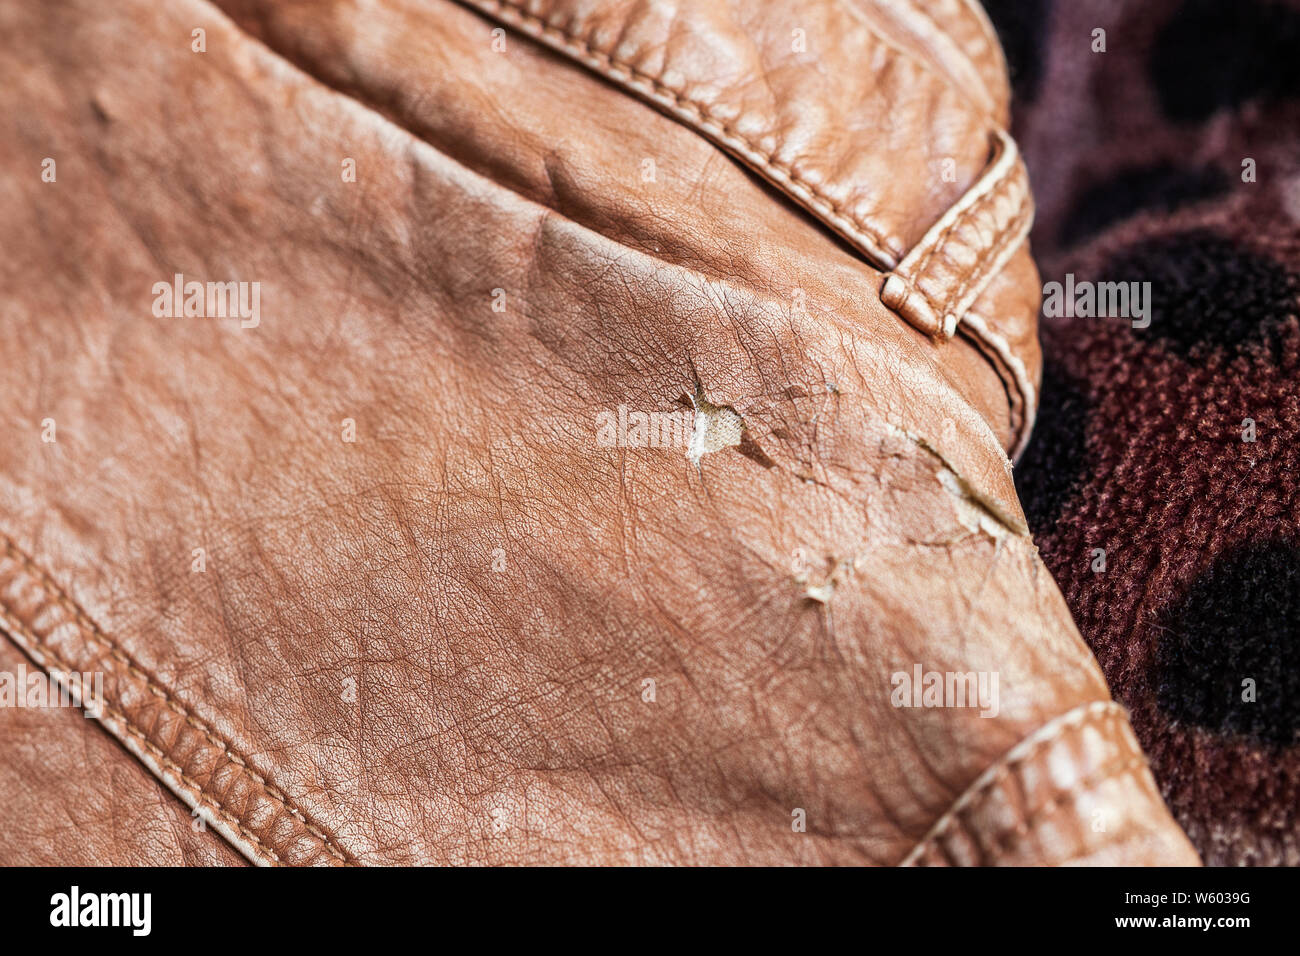 Leather jacket damaged, worn out Stock Photo